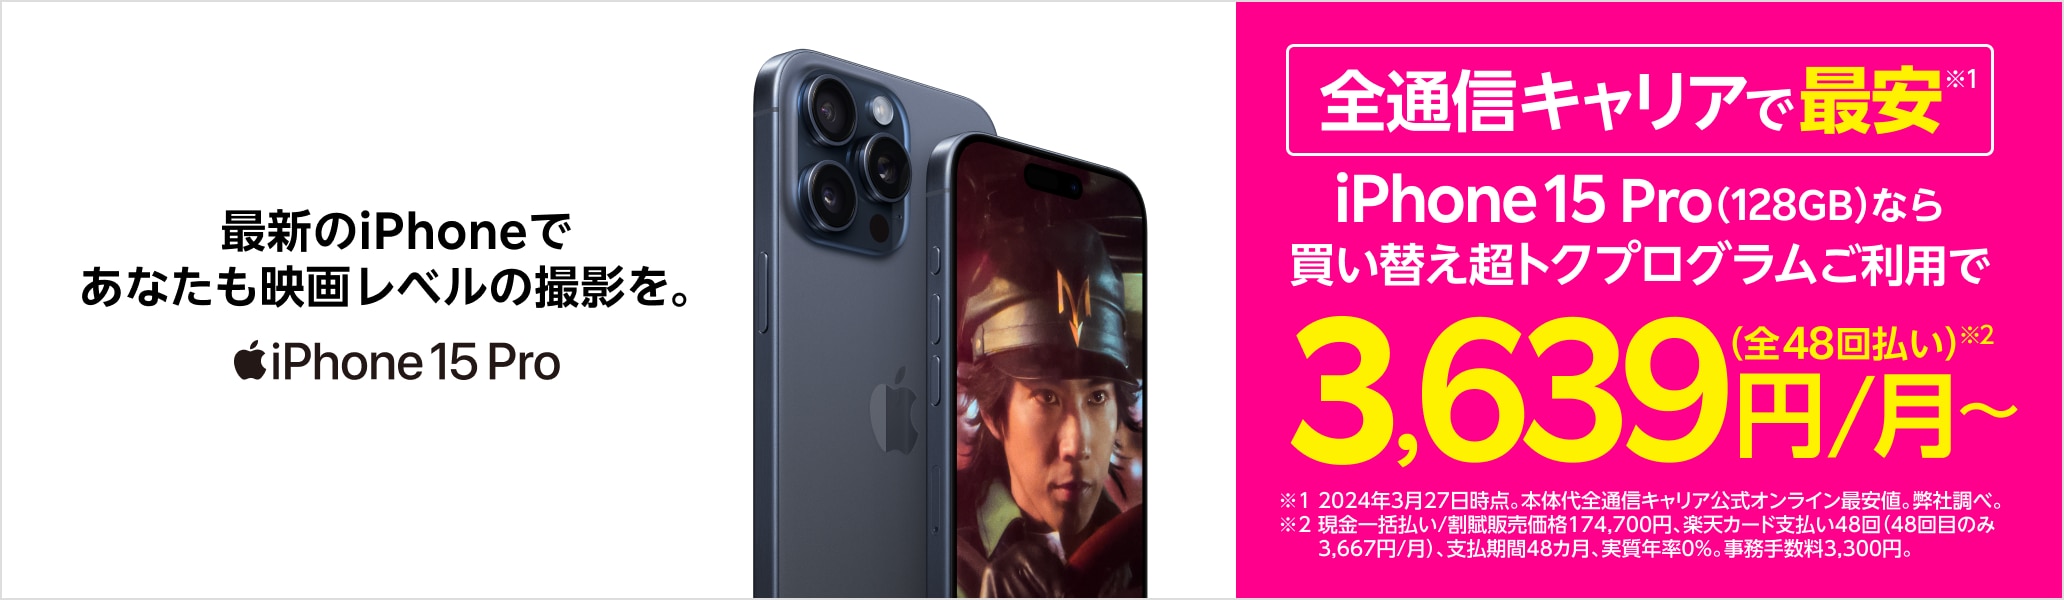 iPhone 15 Pro 最新のiPhoneであなたも映画レベルの撮影を。全通信キャリアで最安※ ※2024年3月27日時点。弊社調べ